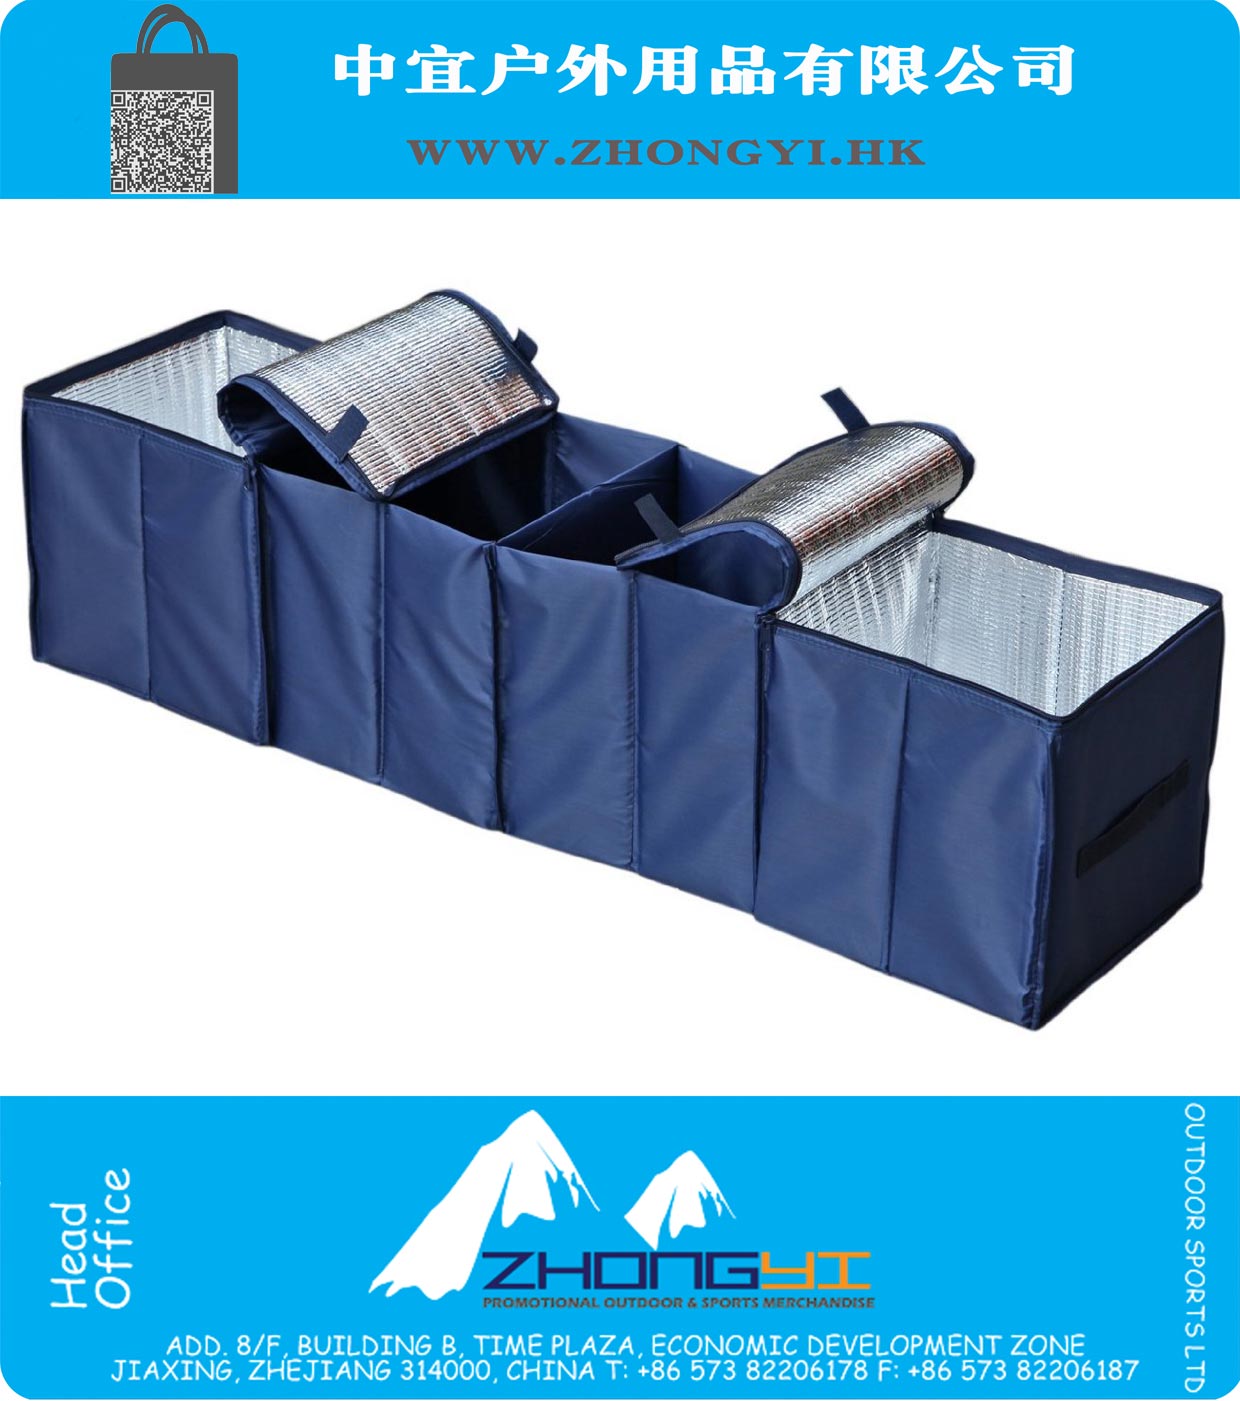 
Bleu marine pliable multi Compartiment tissu de camion de voiture Van panier SUV stockage du coffre Organisateur et Set Cooler